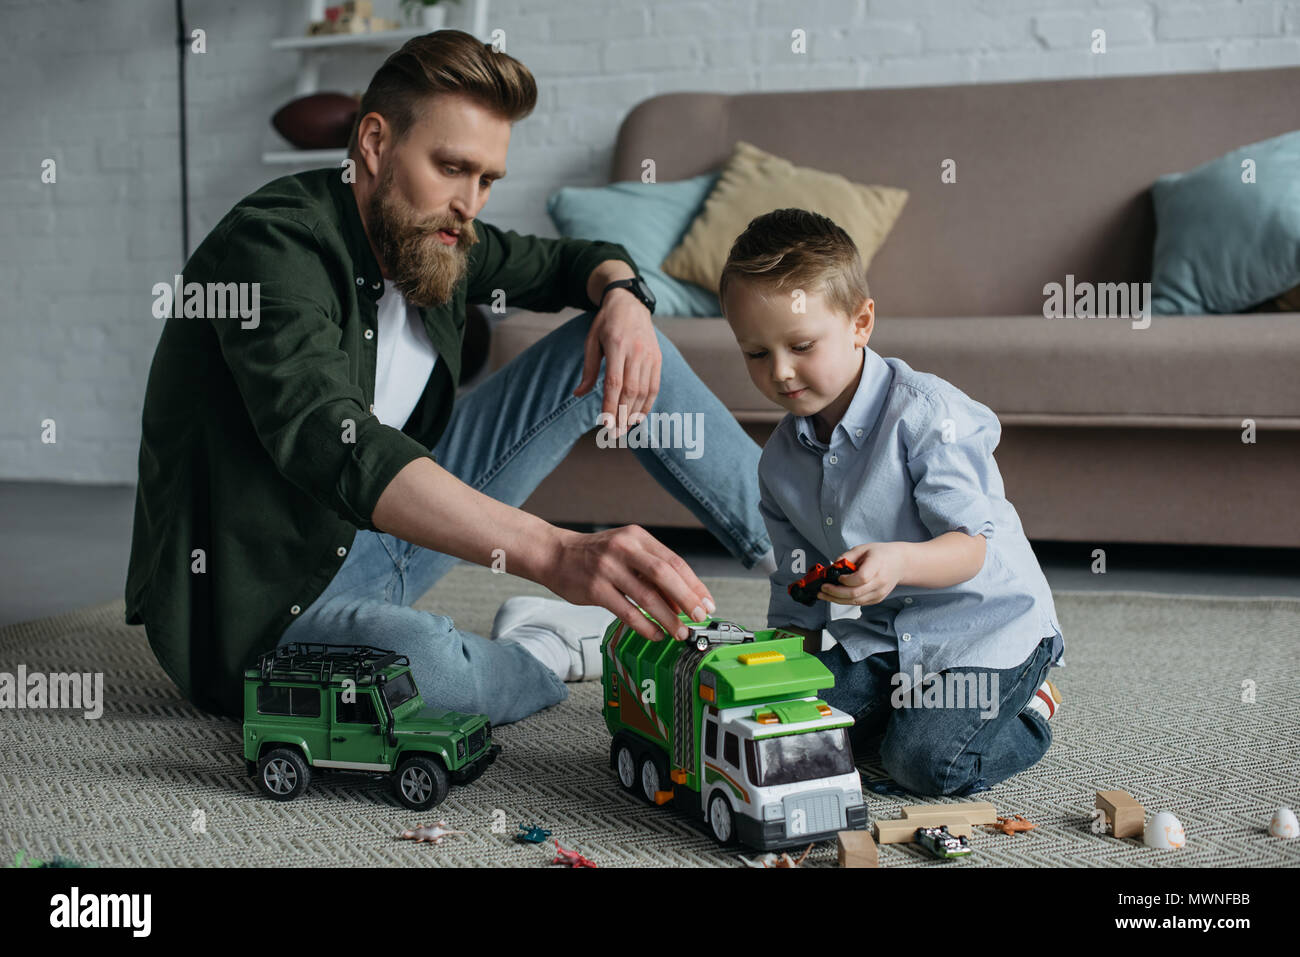 Папа купил грузовик. Папа и малыш играют в машинки. Взрослые играют в игрушки. Мальчик играется в машинки. Игры в машинки с папами.